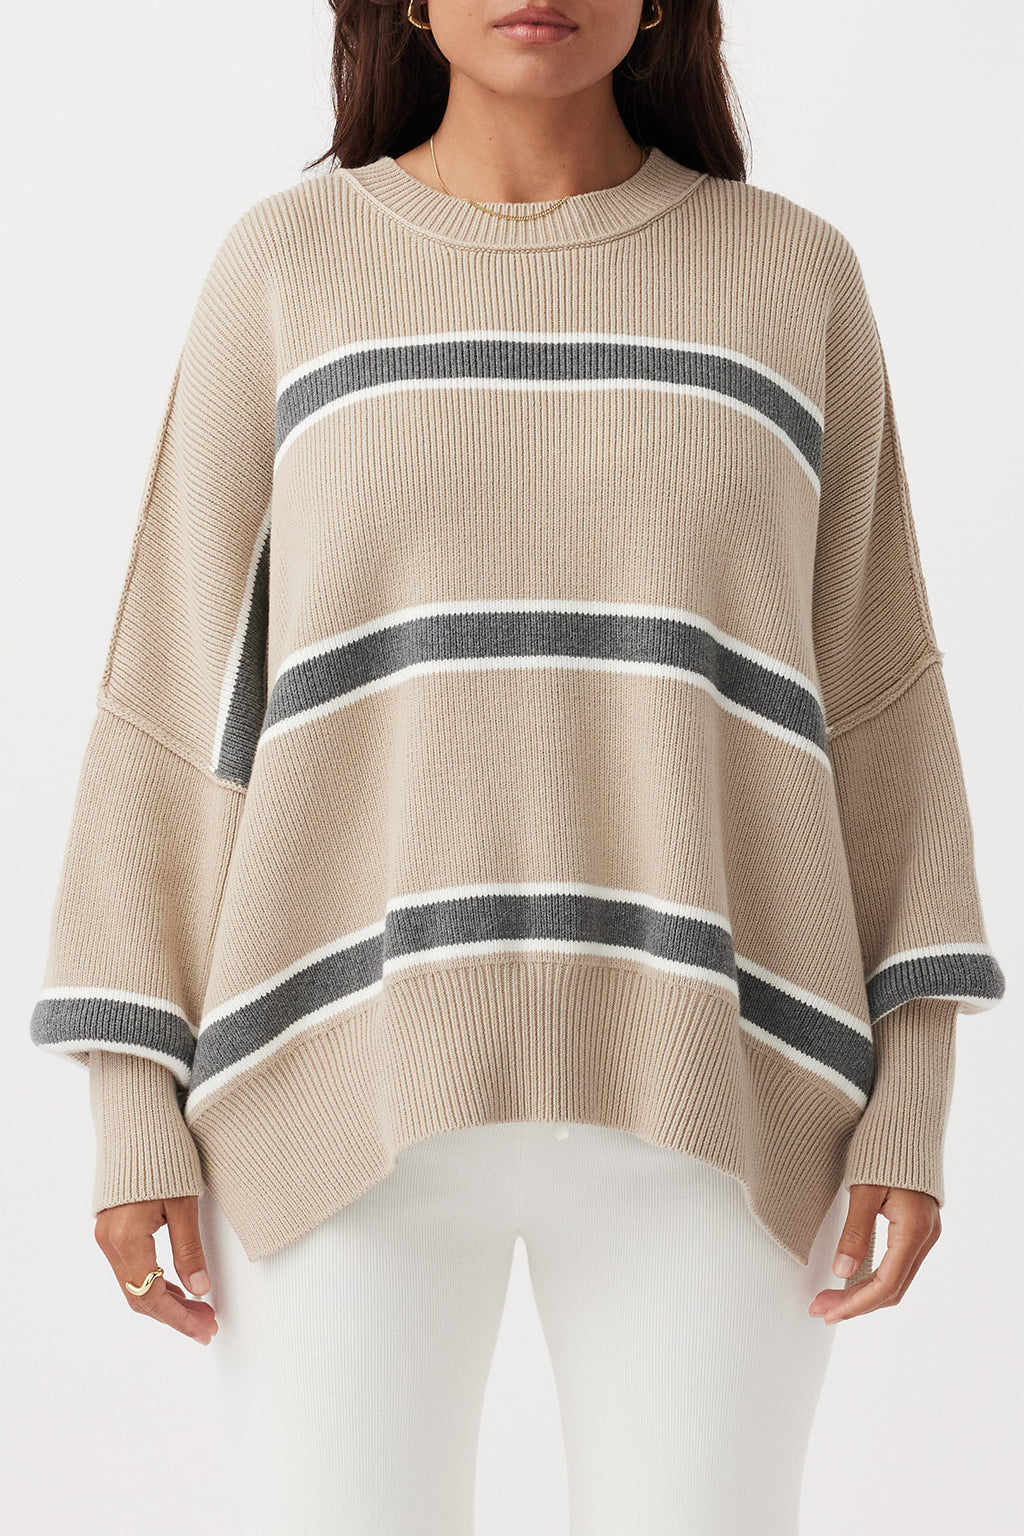 Harper Stripe Sweater - Taupe, Cream & Dark Grey Marle